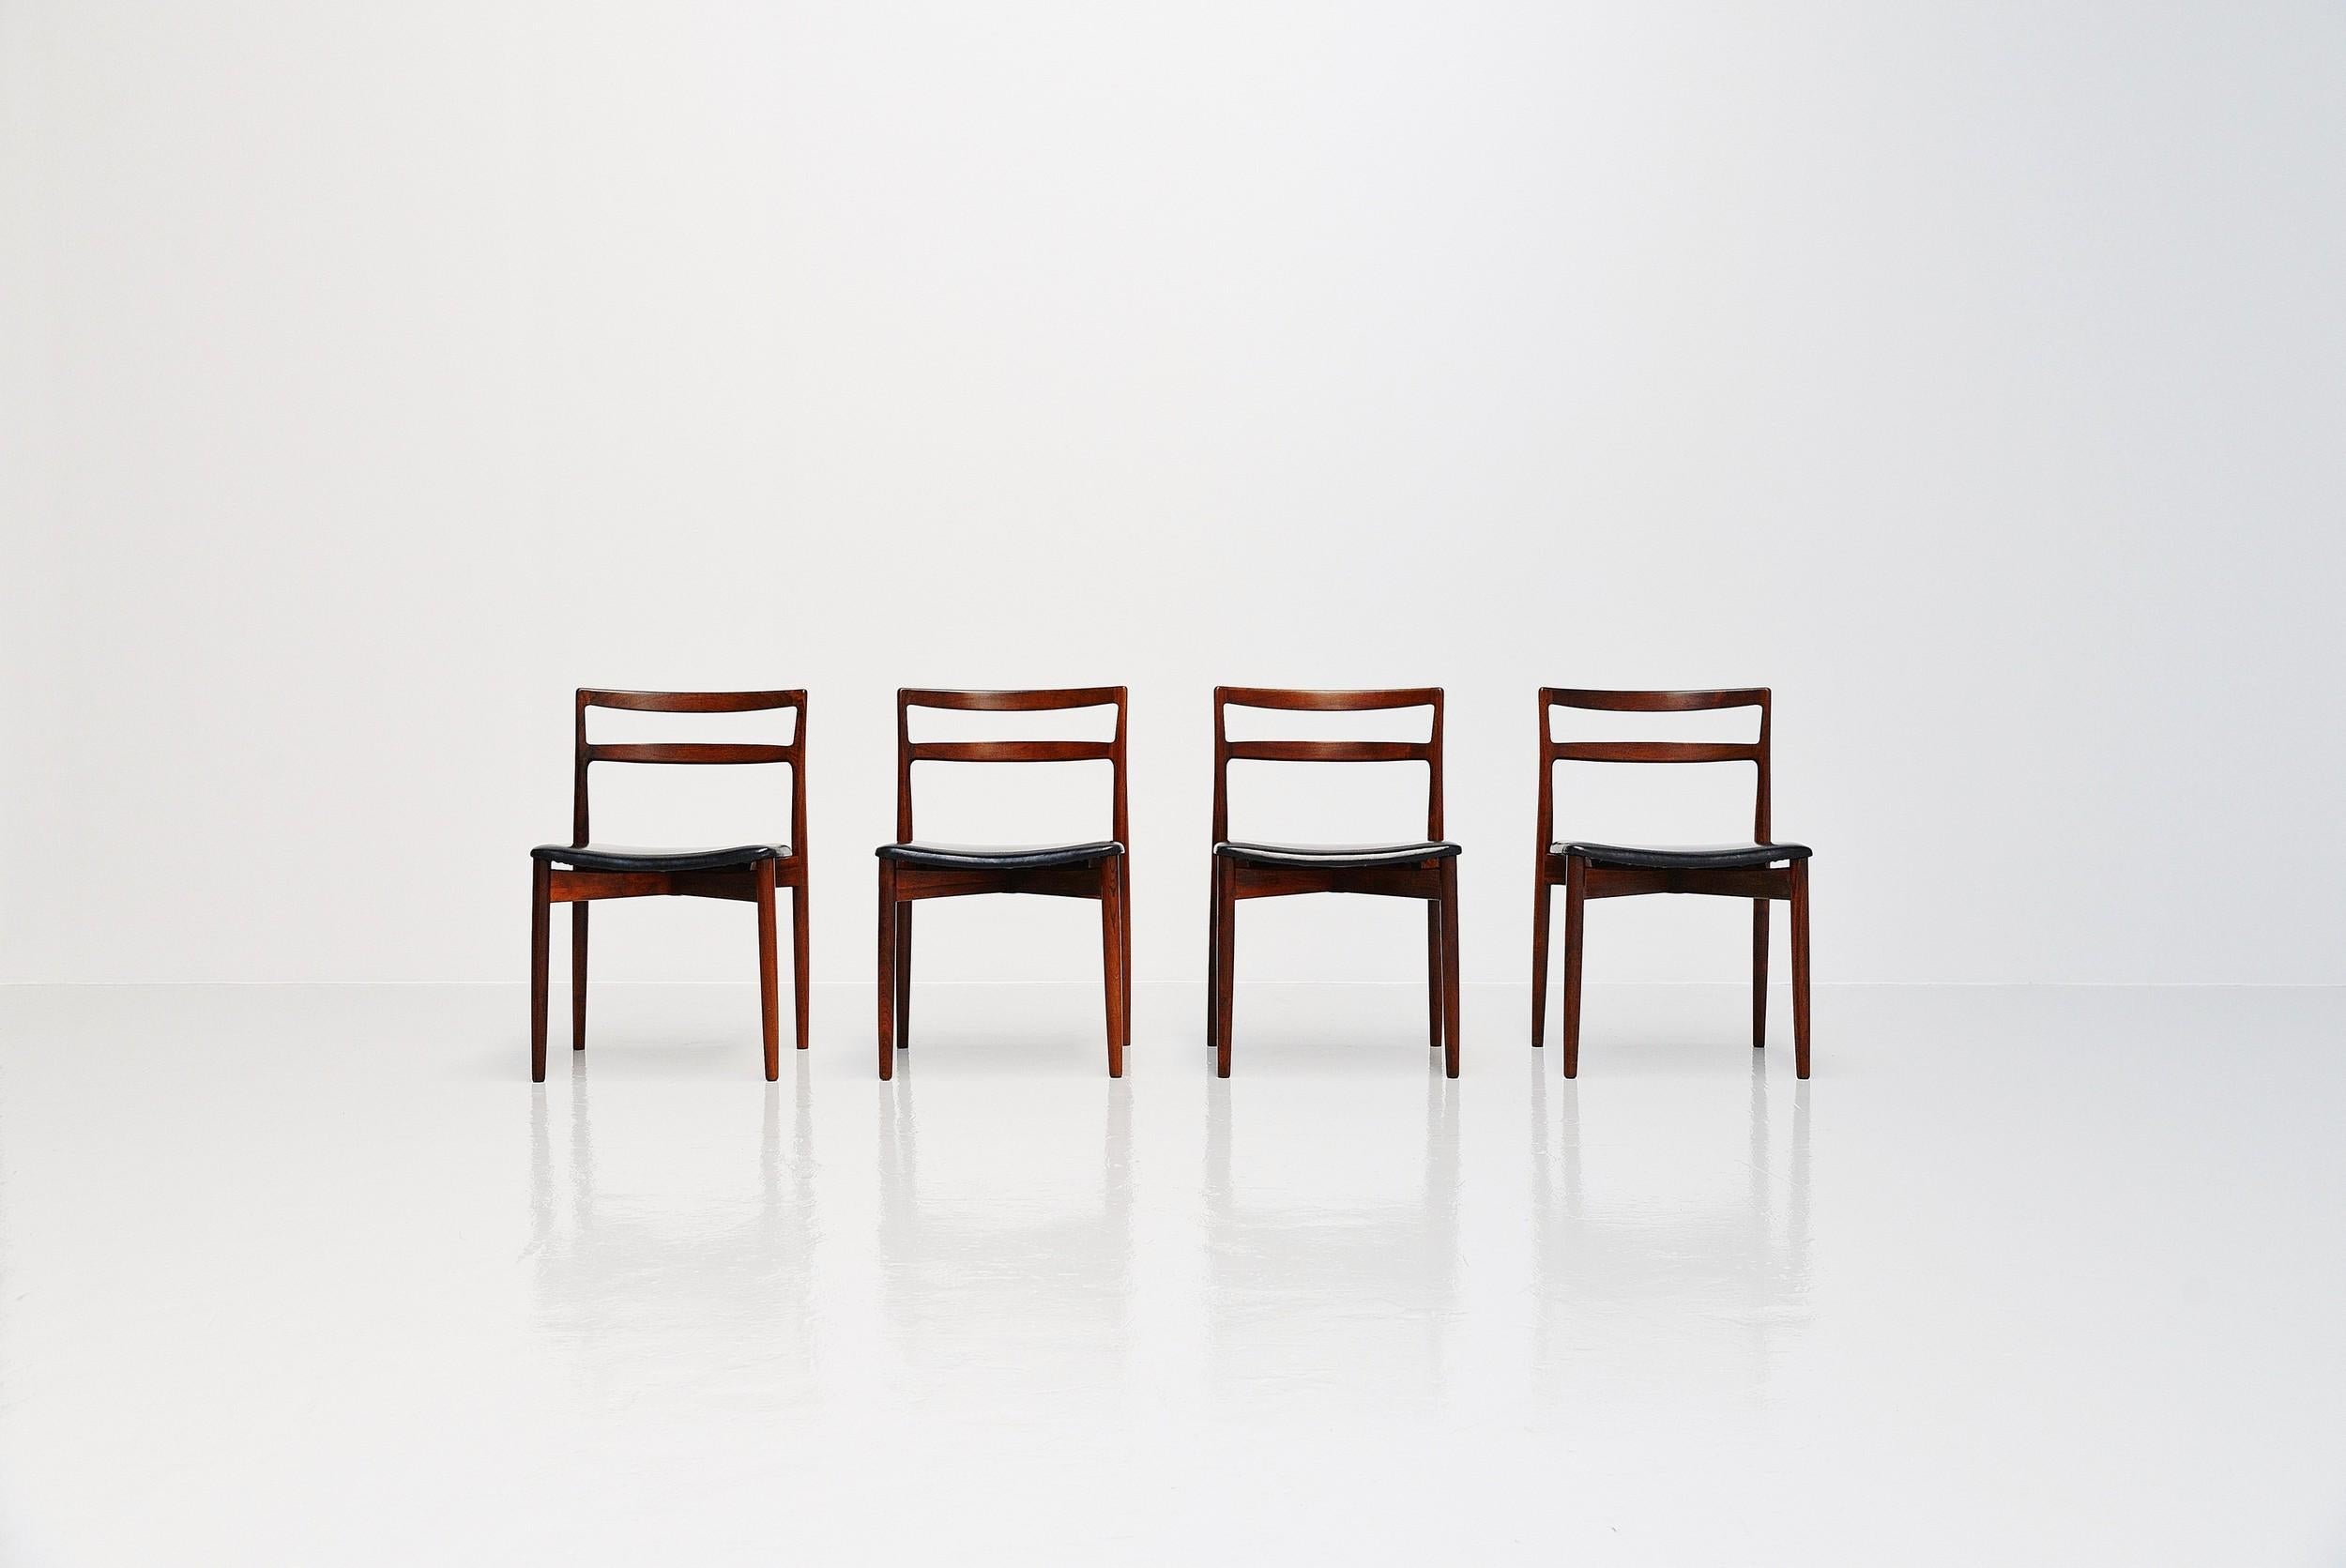 Fantastischer Satz von 4 Esszimmerstühlen Modell 61 entworfen von Harry Ostergaard und hergestellt von Randers Mobelfabrik, Dänemark 1961. Die Stühle haben sehr schöne charakteristische, typisch dänische, moderne Merkmale. Das schöne, dunkel